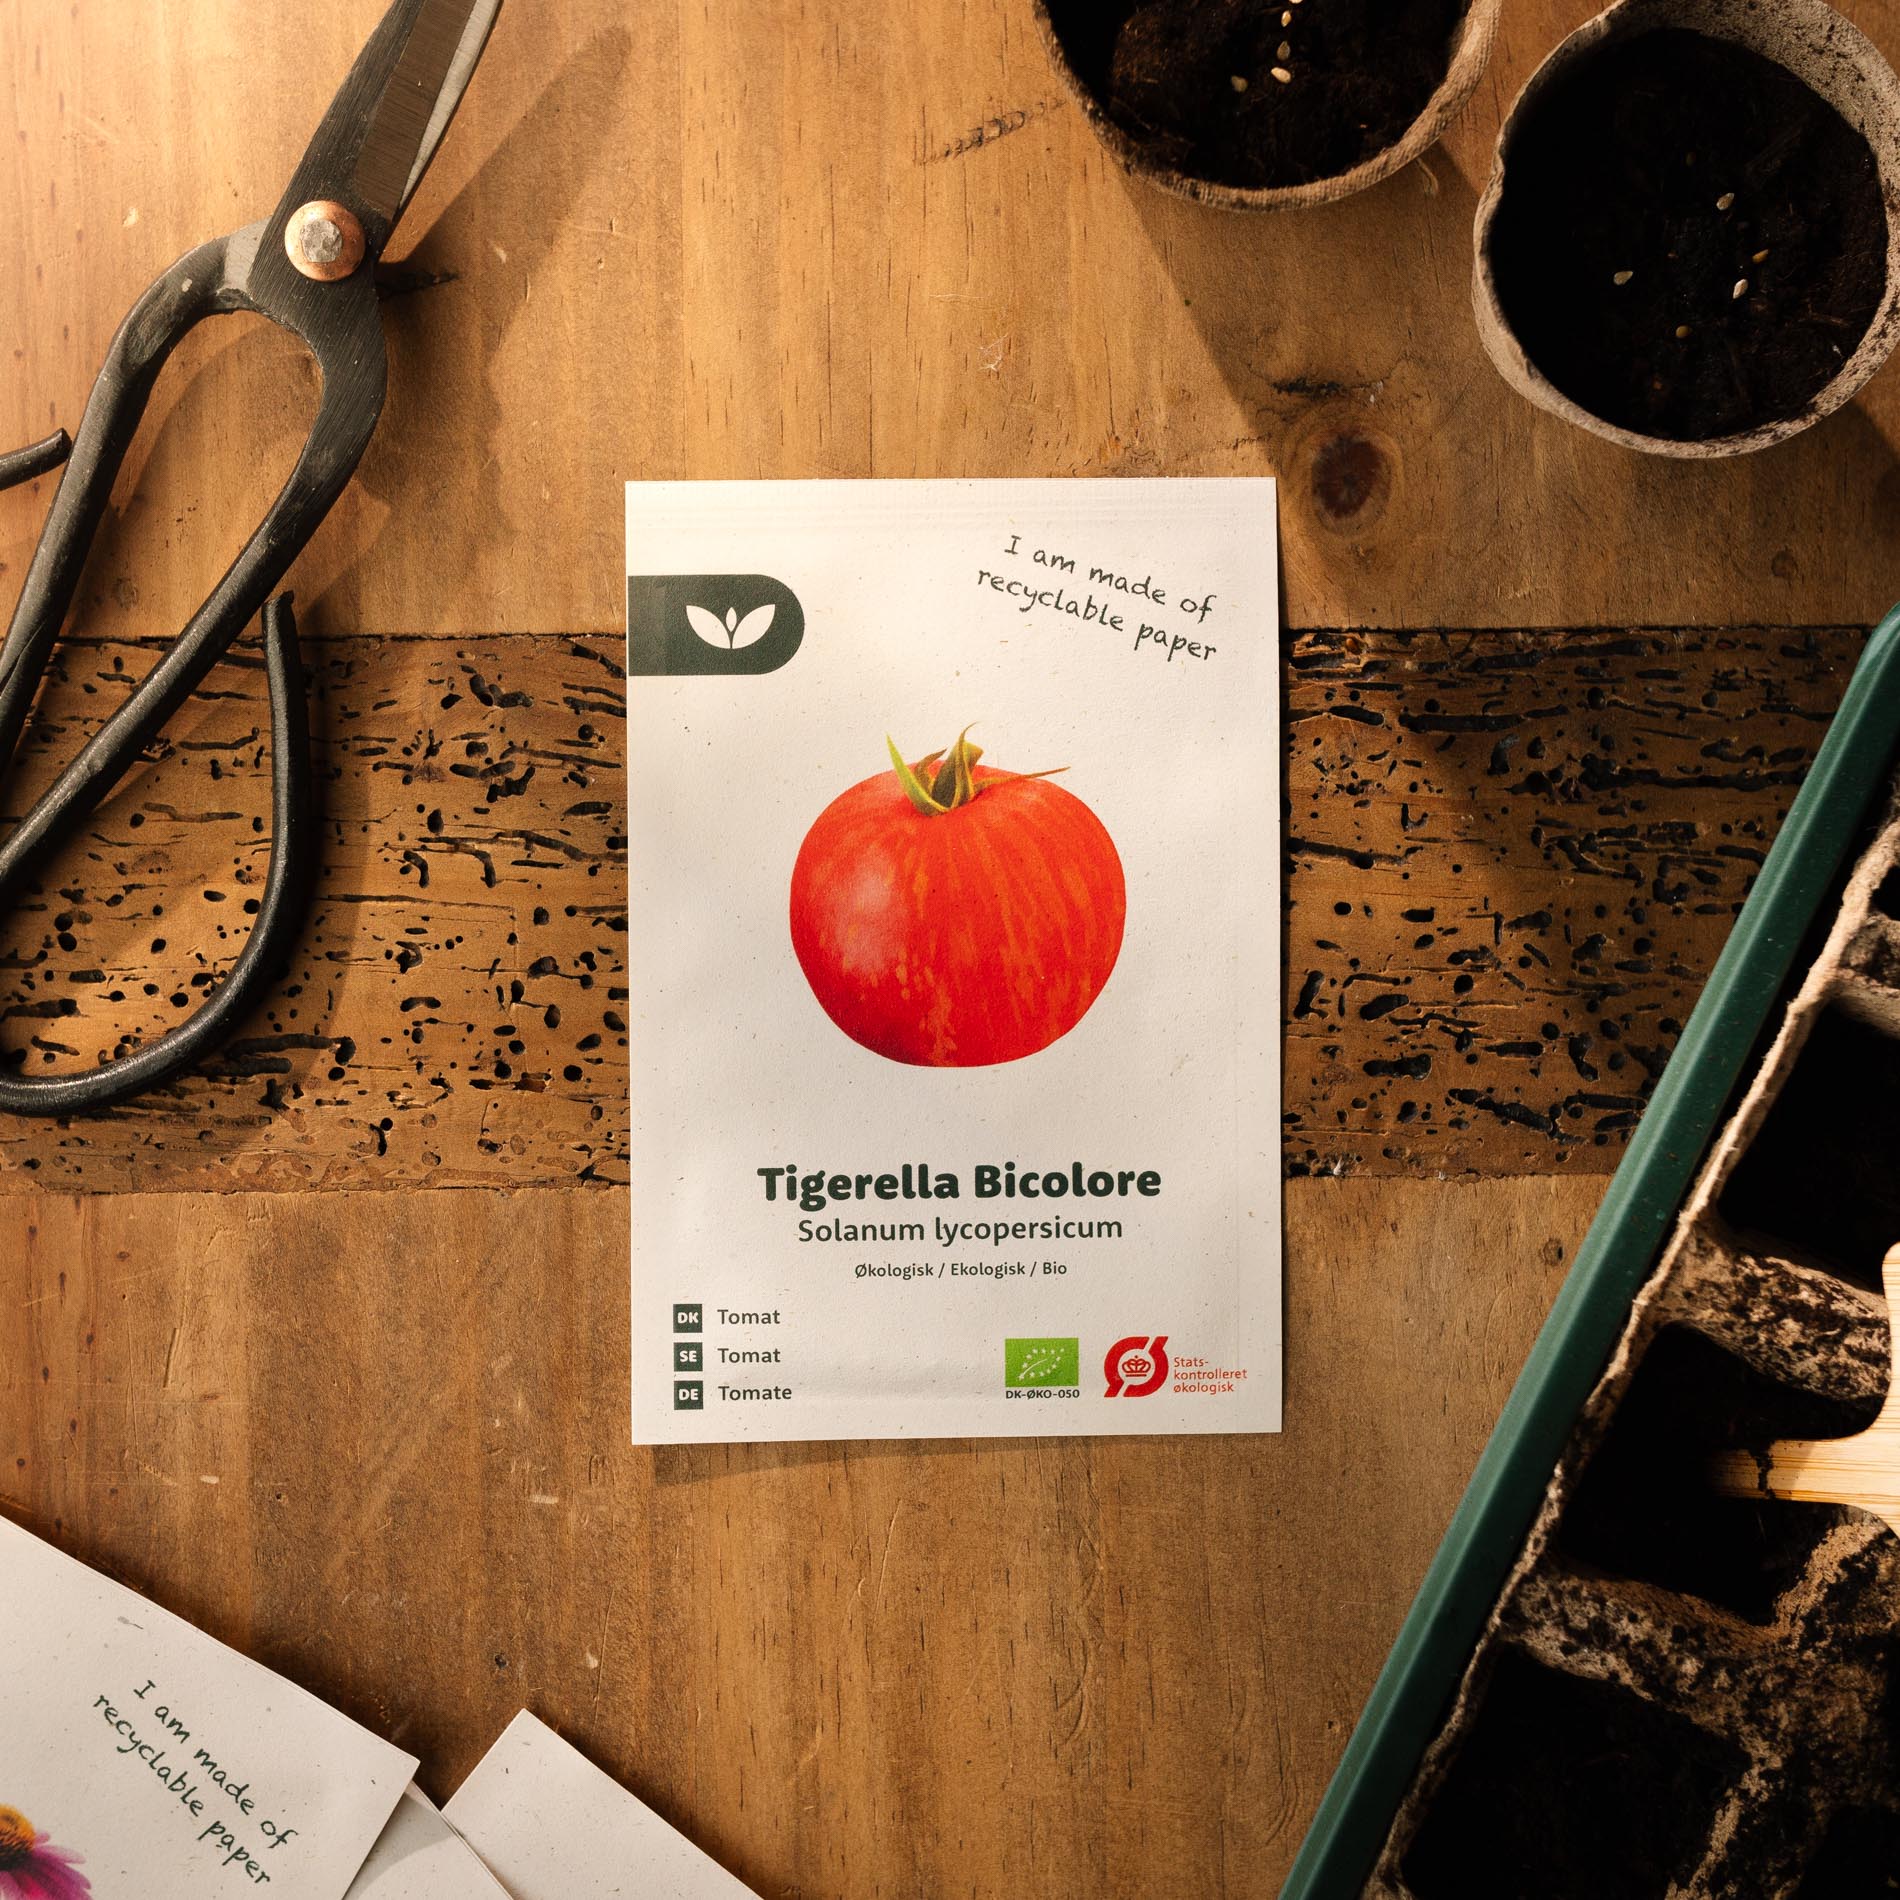 Tomatensamen "Tigerella Bicolore" - 40 BIO Samen